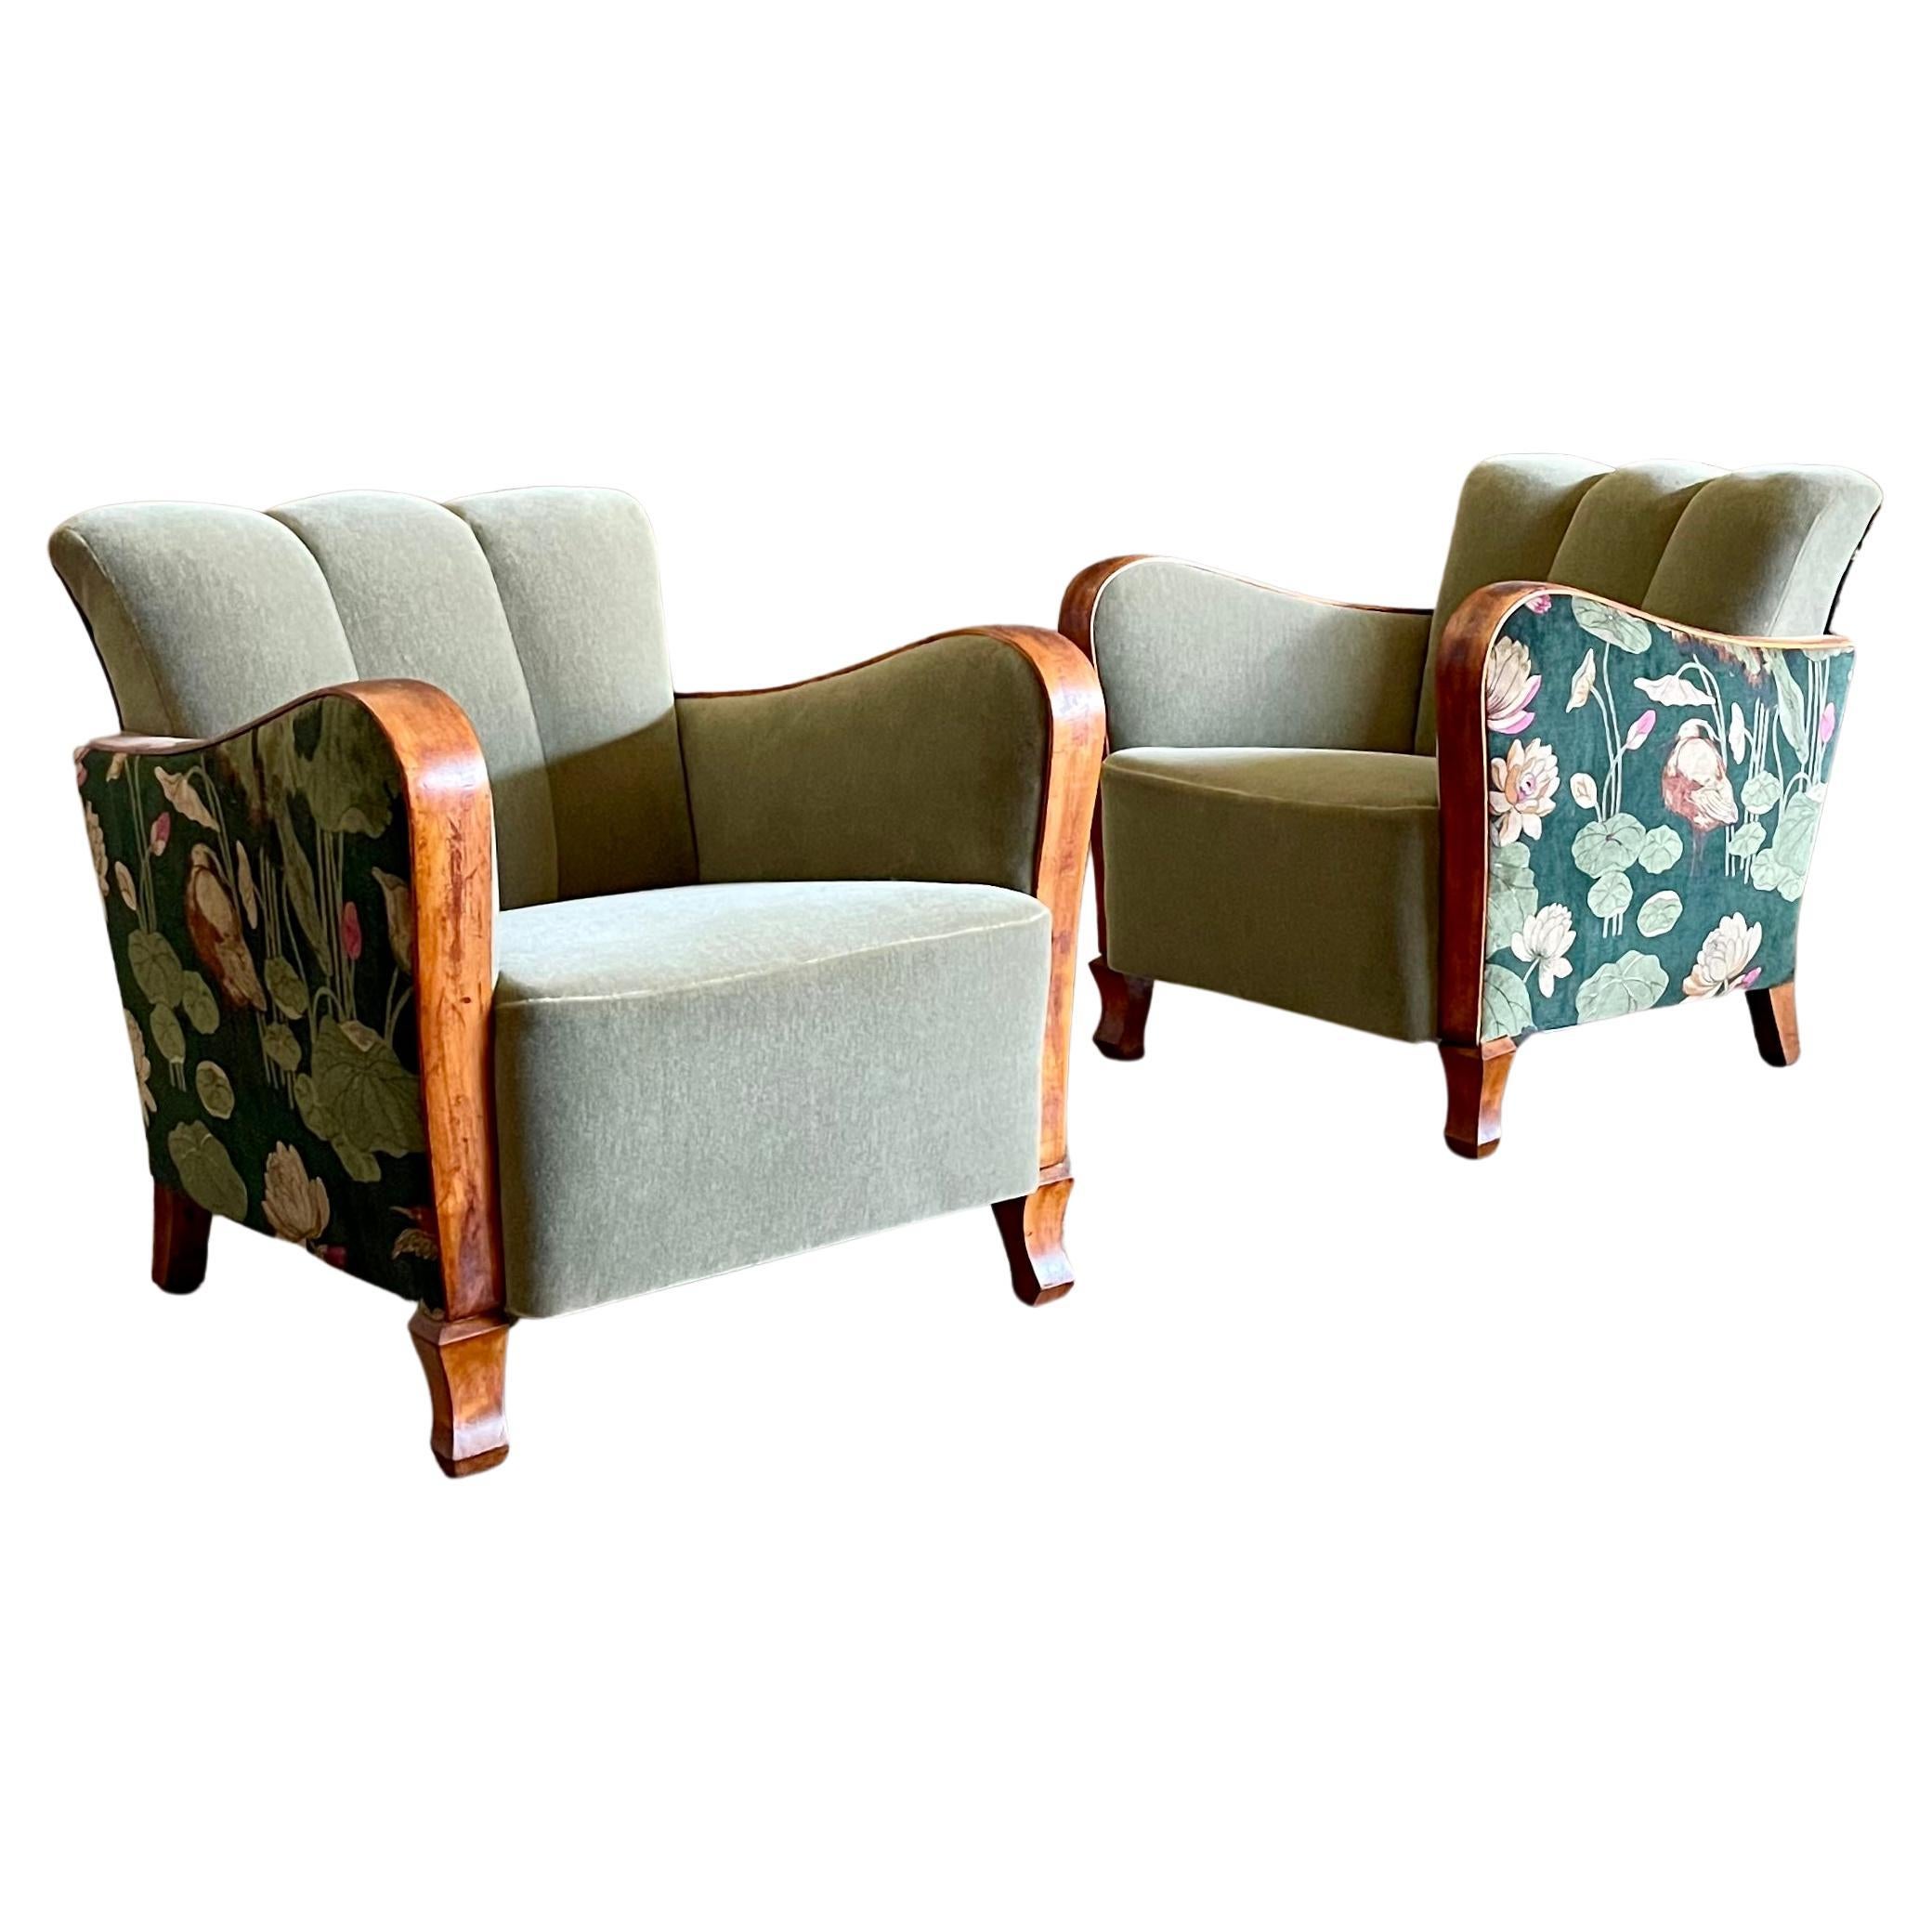 Offrez-vous le summum du luxe avec cette exquise paire de fauteuils club scandinaves Art Deco, ornés de somptueux mohair et de velours design. Le rembourrage en mohair pelucheux vous invite à vous enfoncer dans le confort, tandis que le velours